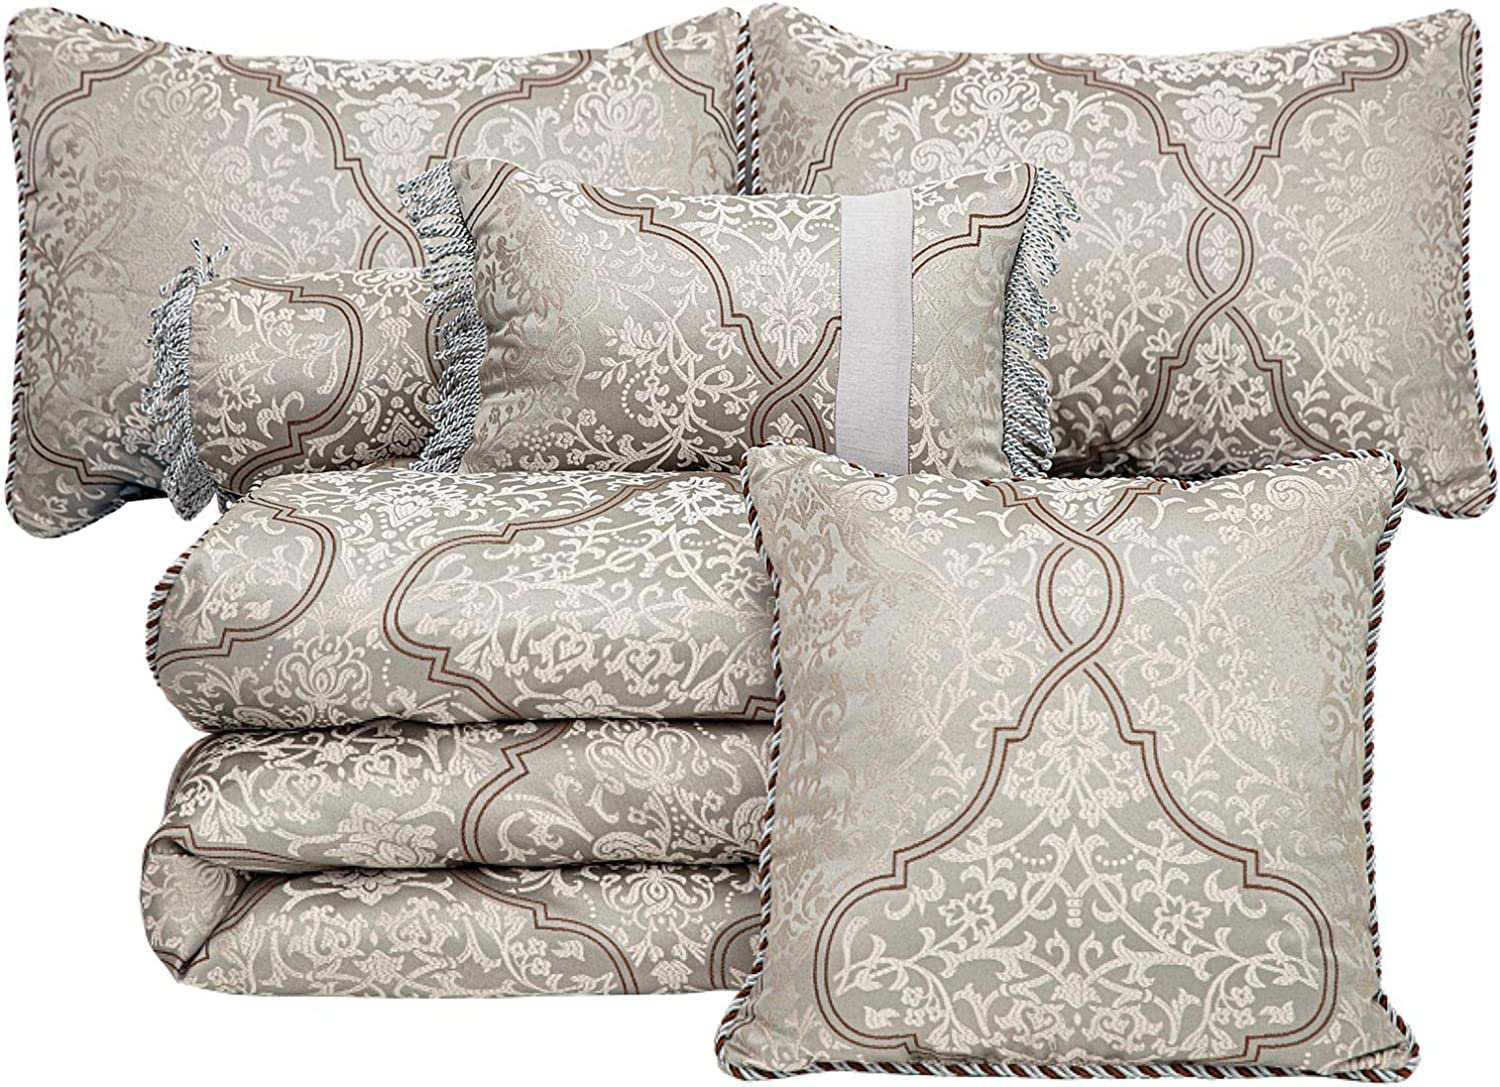  Nestl Throw Pillows for Couch, 12x18 Pillow Insert, Soft Throw  Pillow, Lightweight 12x18 Pillow Inserts, Machine Washable Sofa Pillows, White  Throw Pillows, Premium Throw Pillow Insert 12x18 Set of 2 